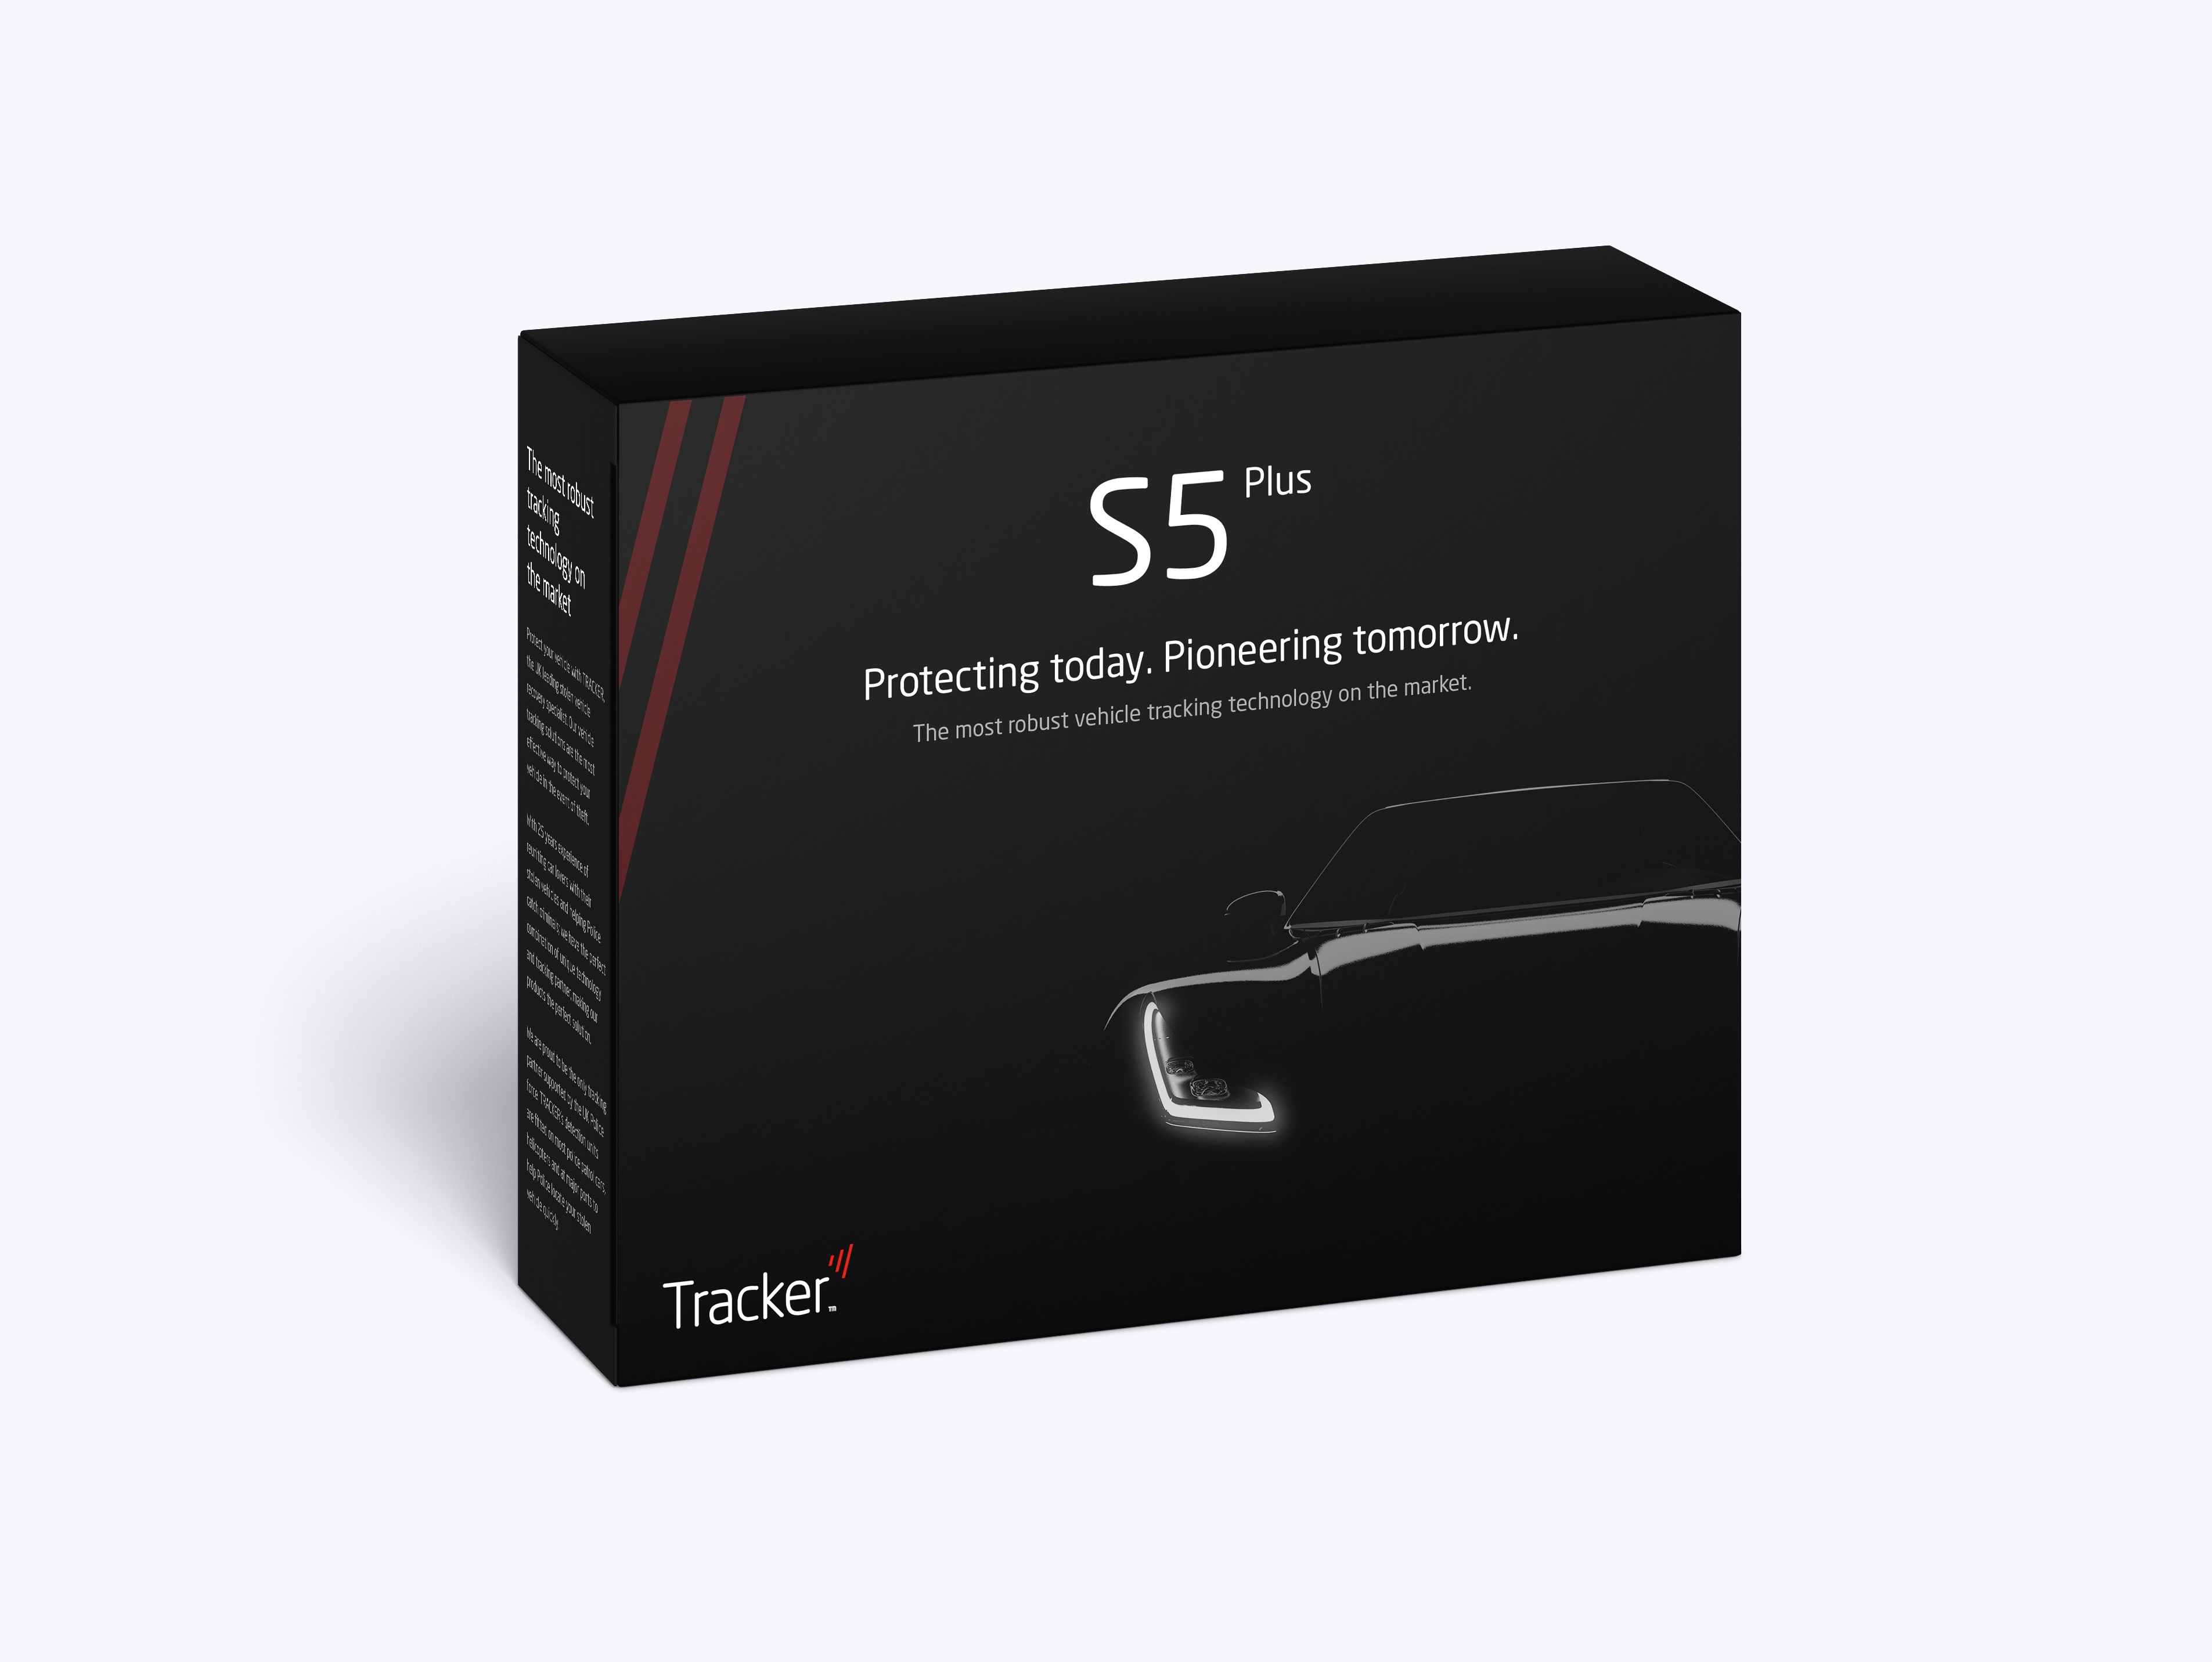 S5 Plus packaging